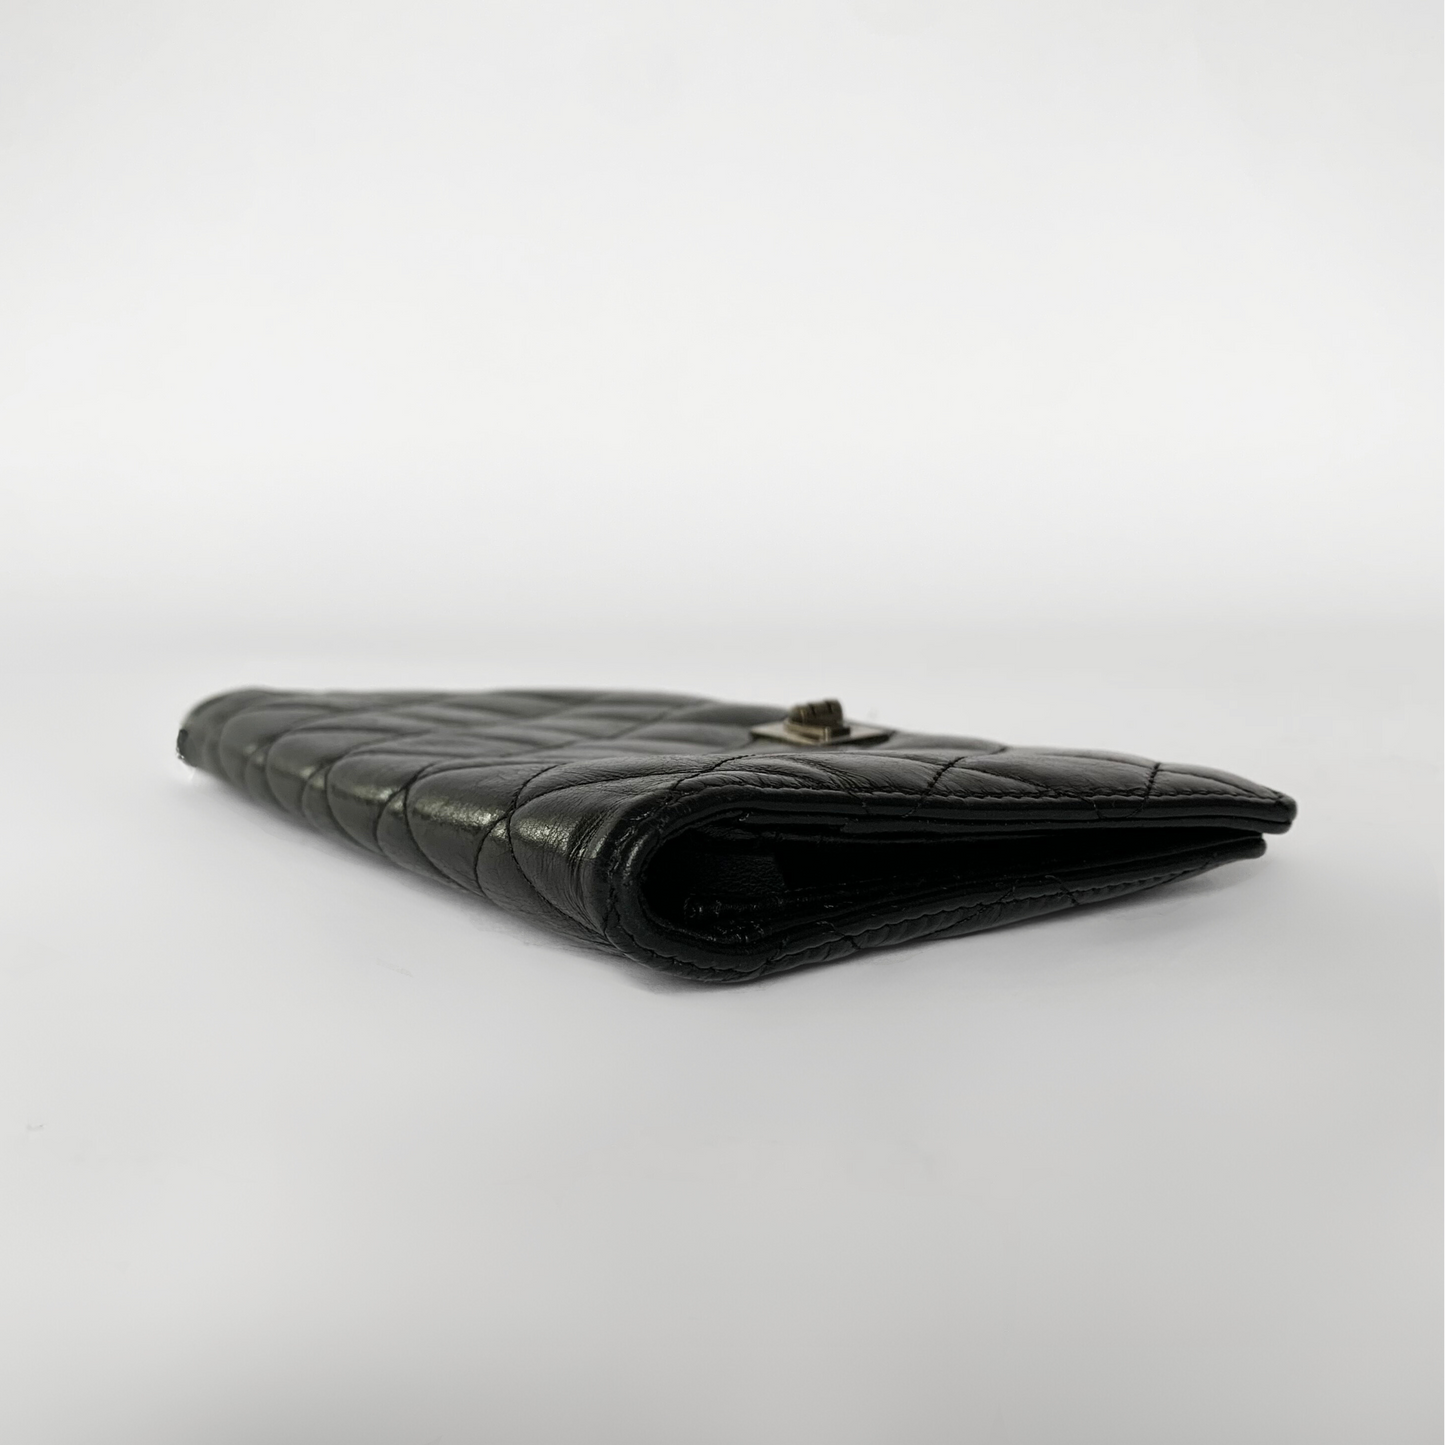 Chanel Chanel Cartera 2.55 Piel Cordero - Carteras - Etoile Luxury Vintage